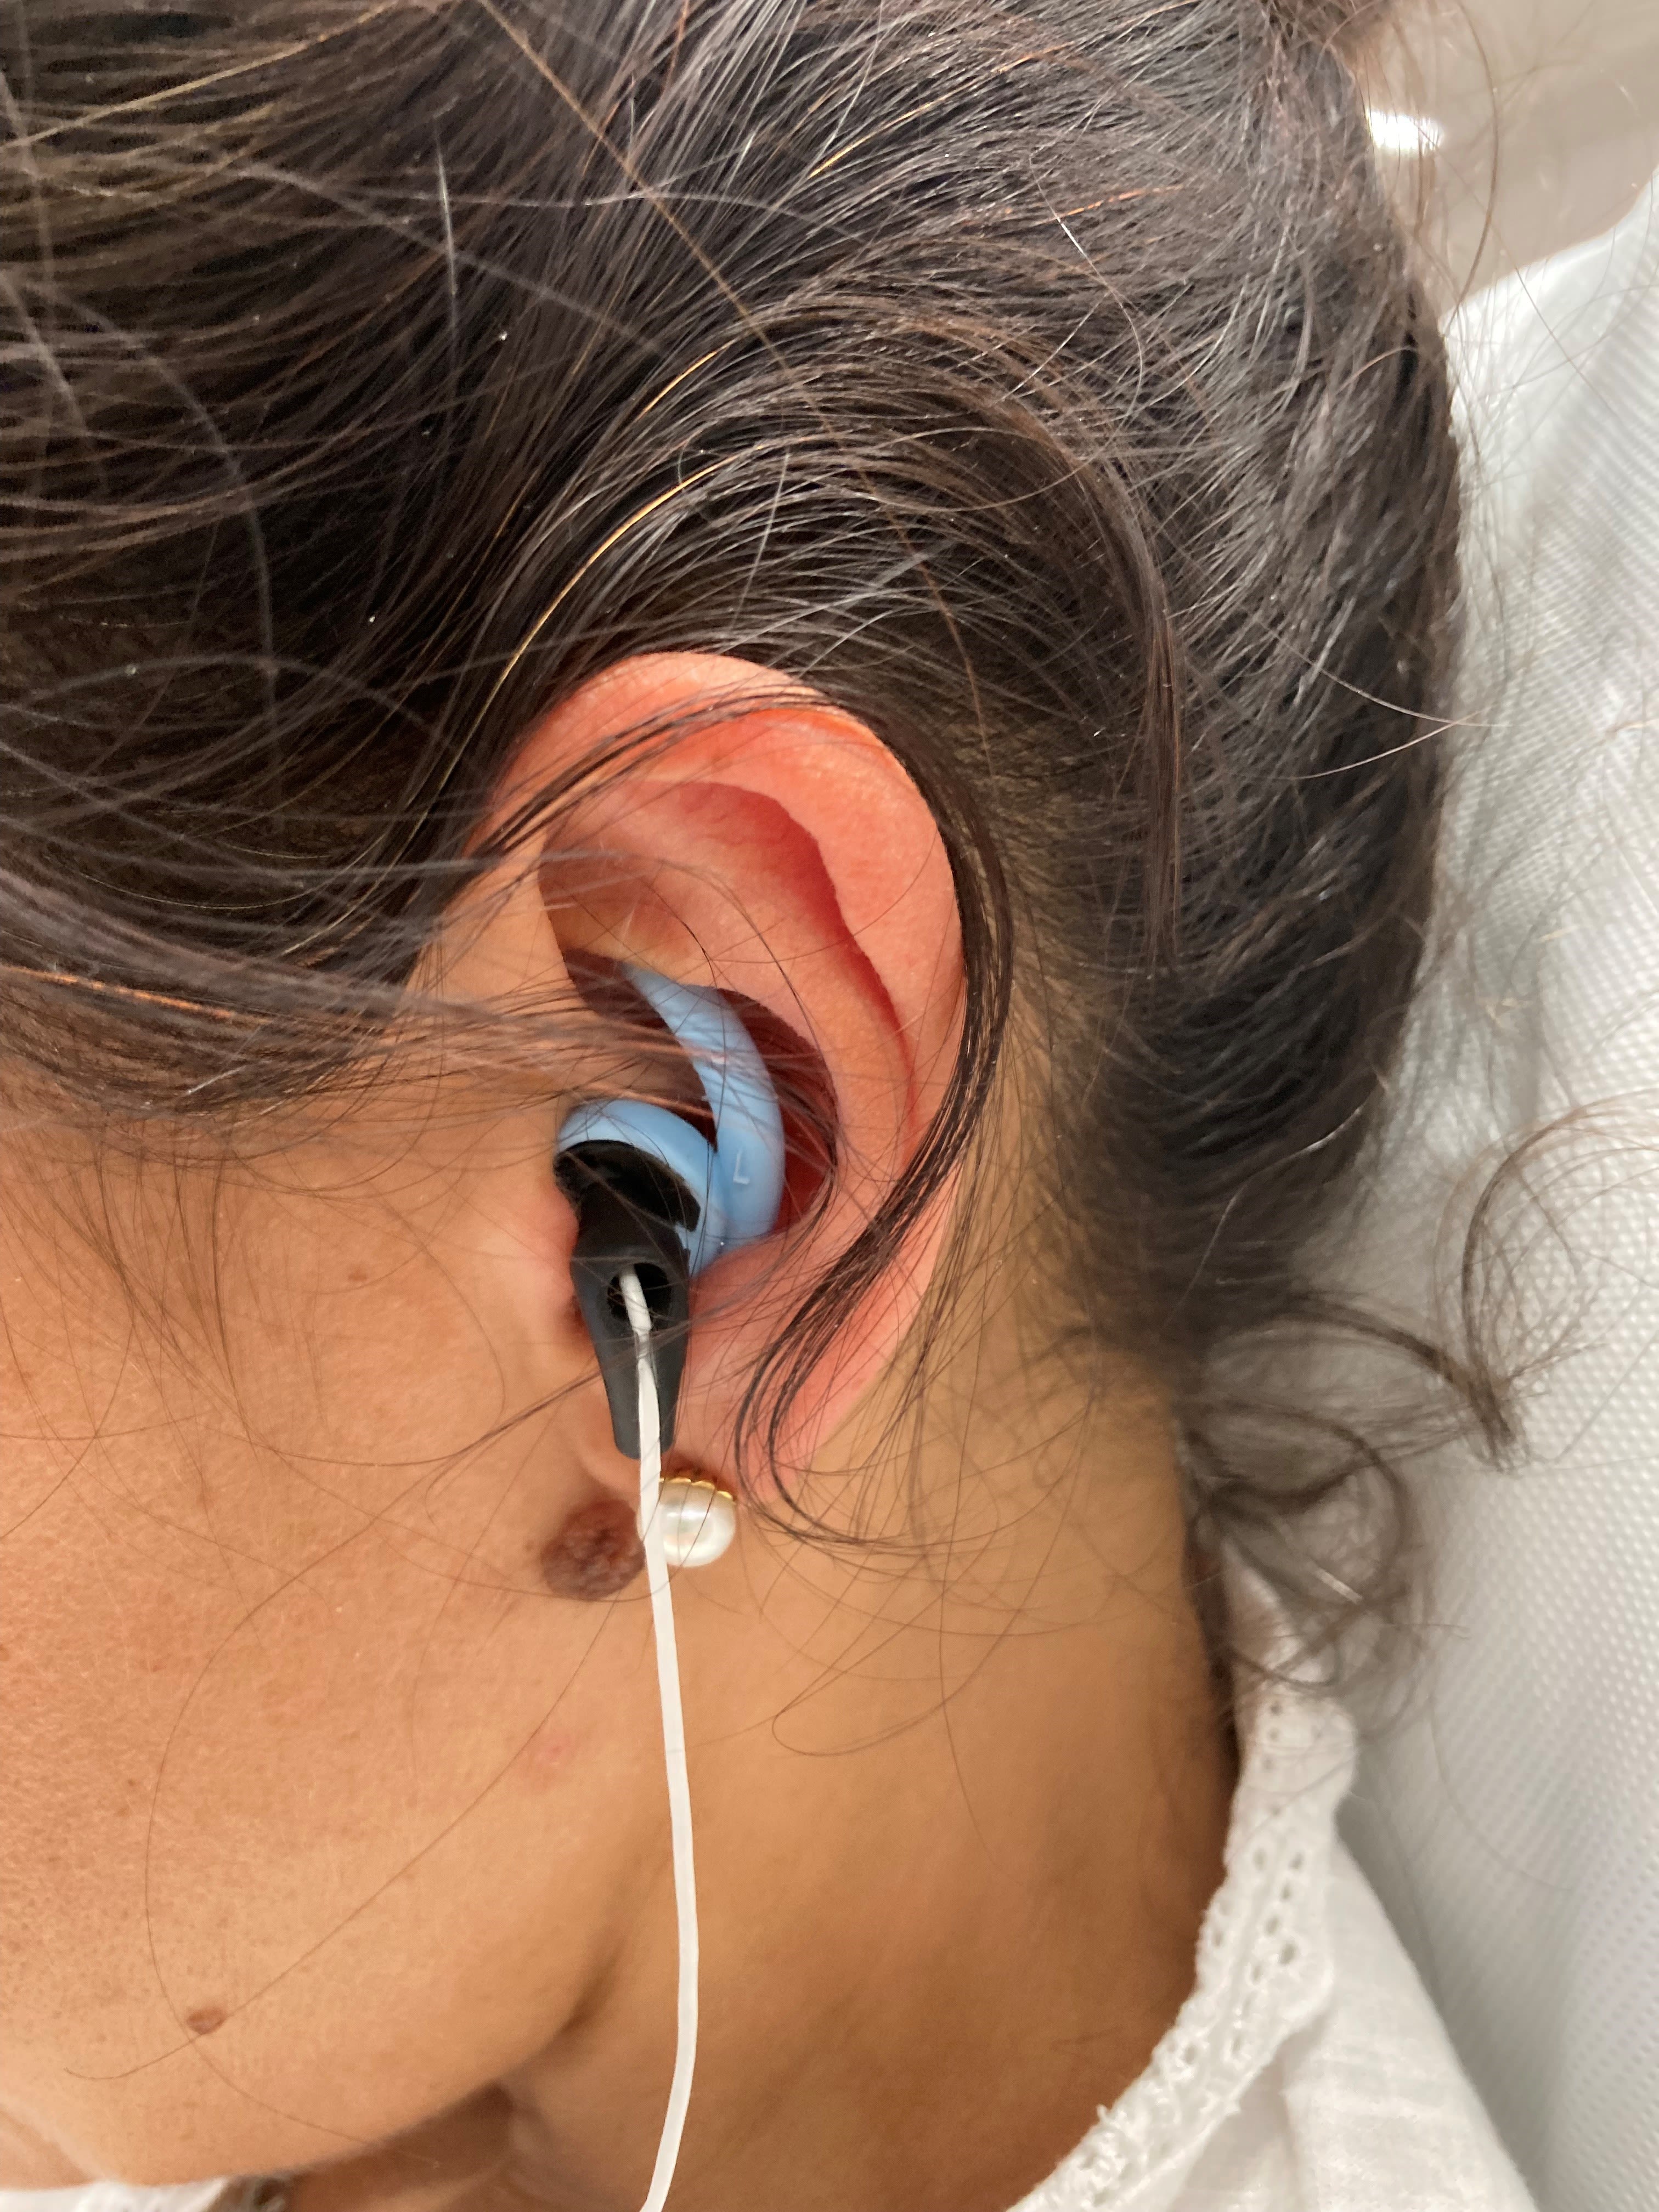 An ear wearing an earbud-like device